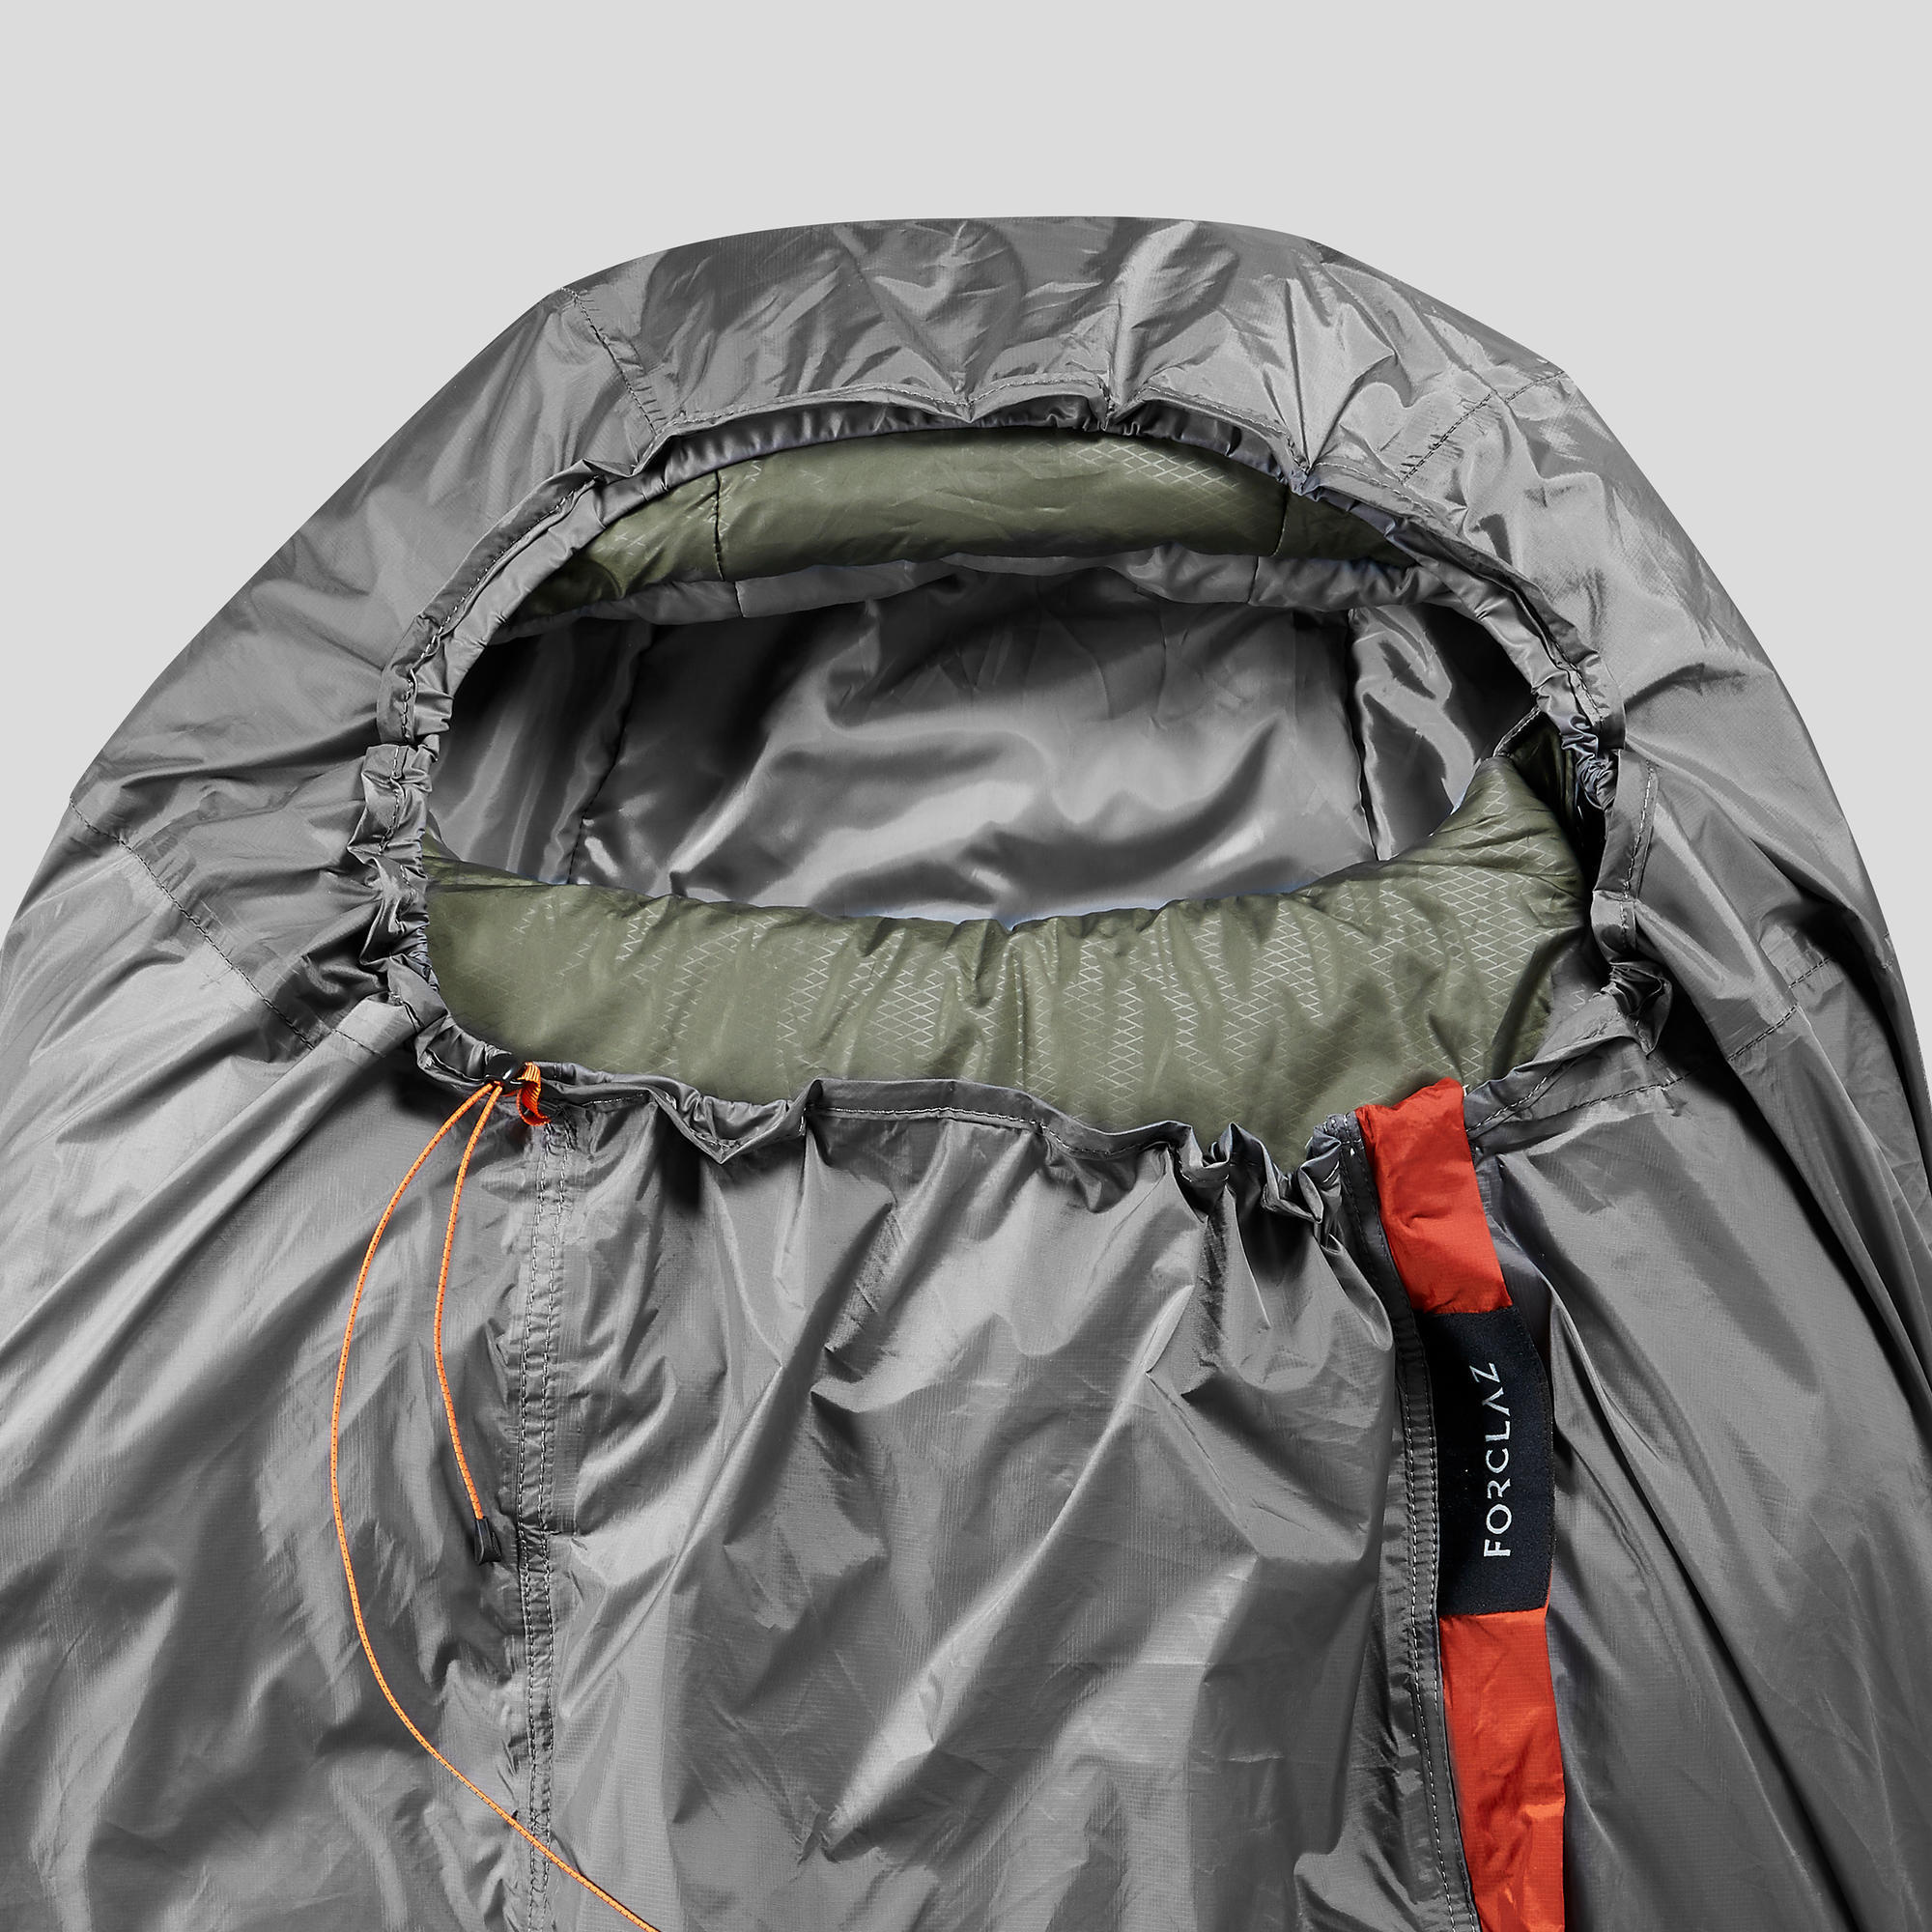 Waterproof and breathable trekking bag 